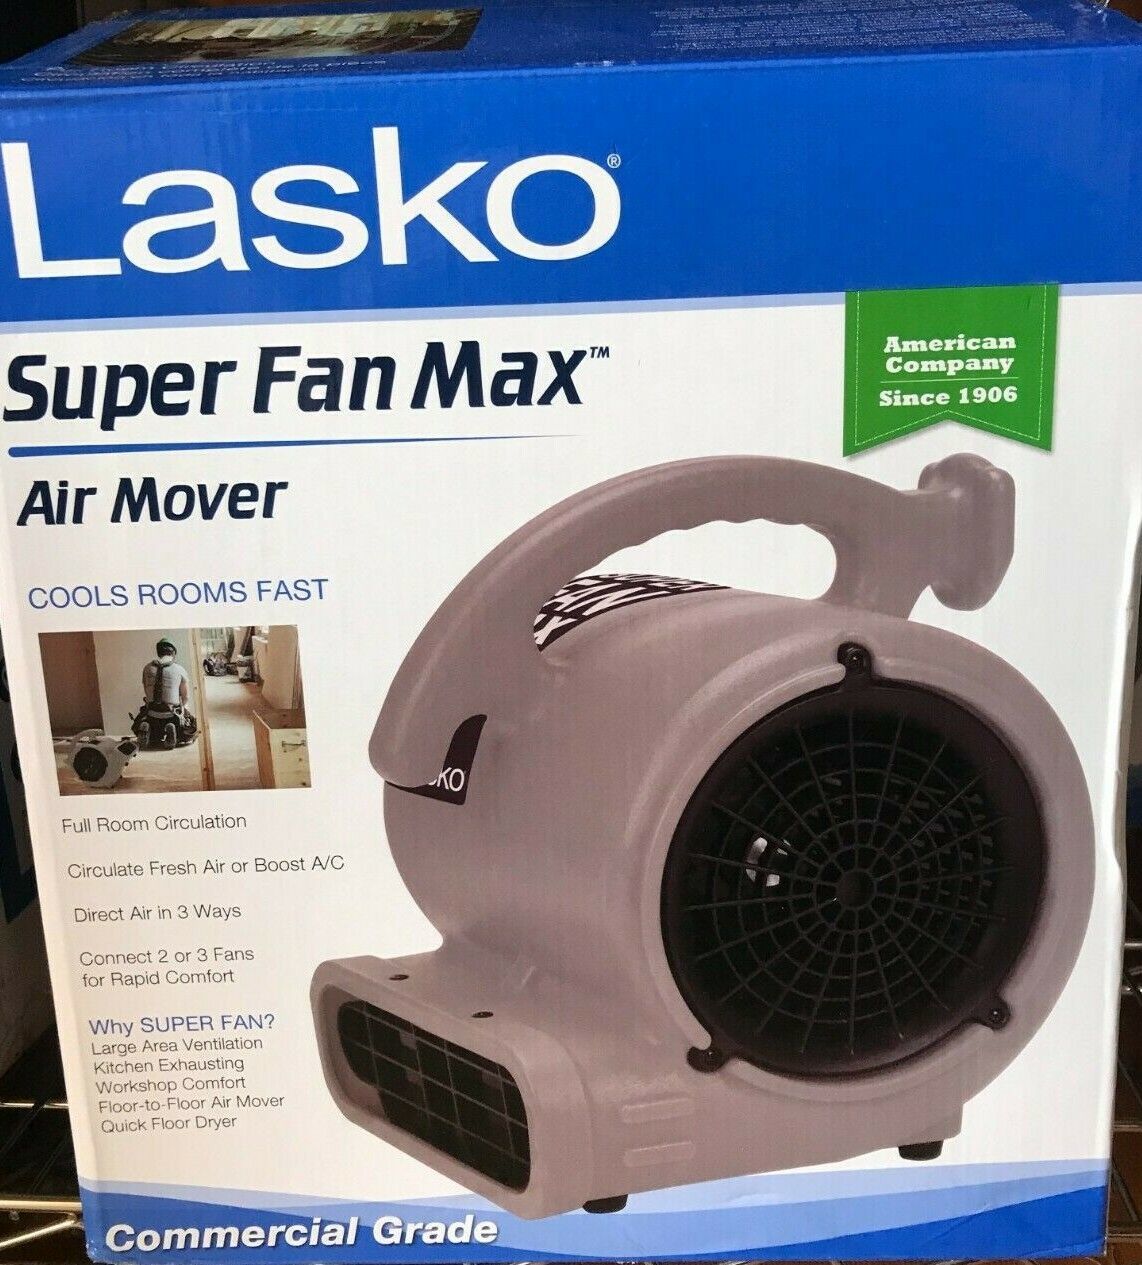 Lasko Super Fan Max Air Mover